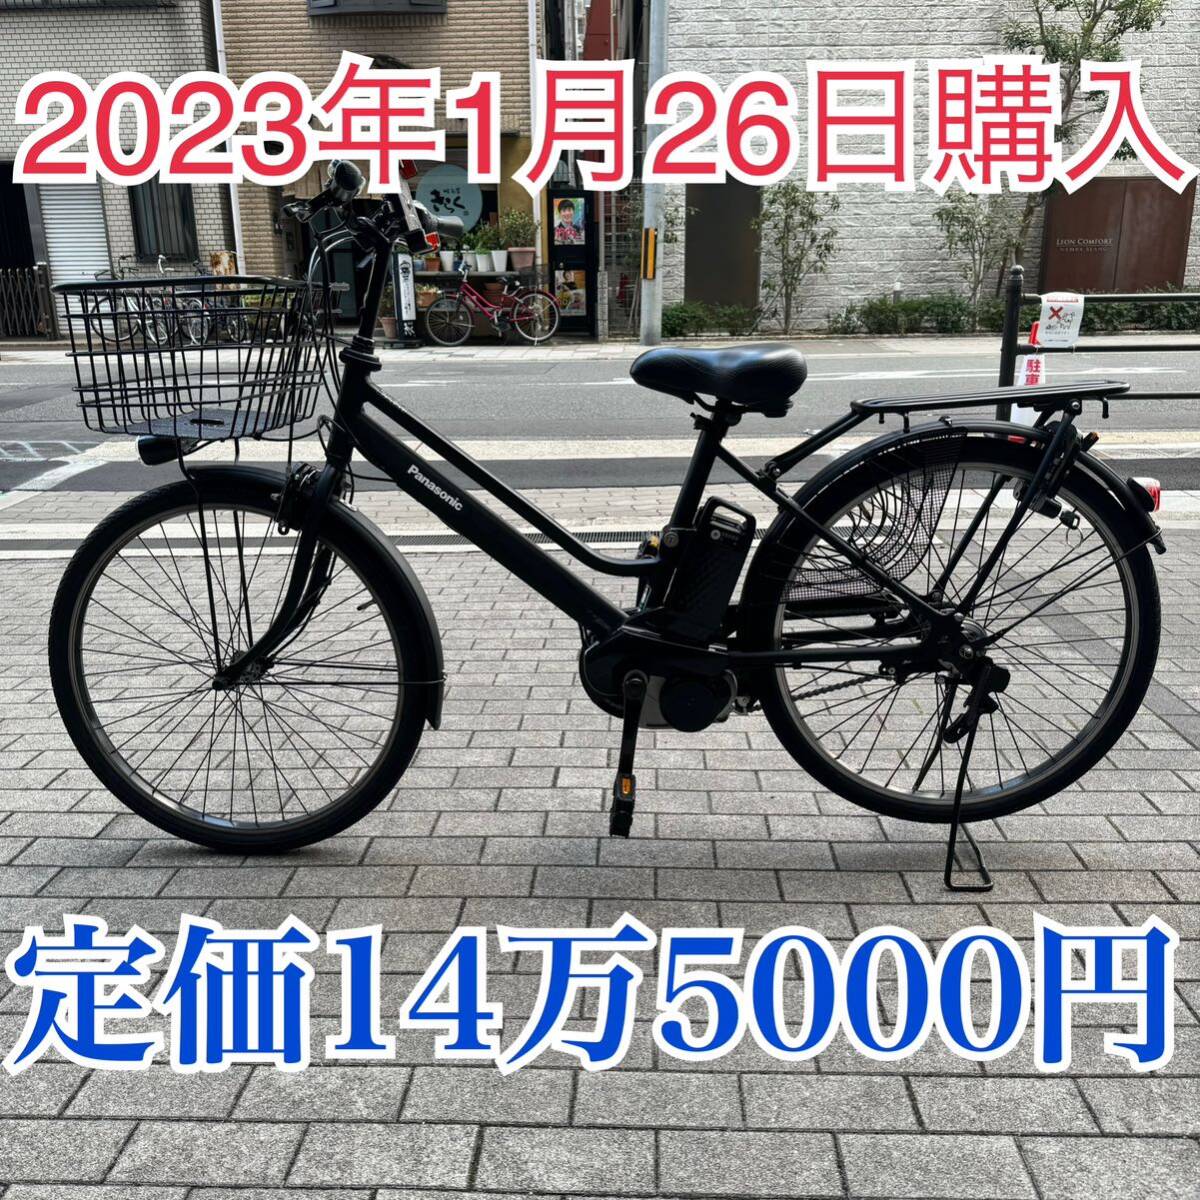 自転車 Panasonic パナソニック 電動自転車 ティモS BE-FTS641 大阪 充電器付き ブラック 黒色 電動アシスト自転車_画像1